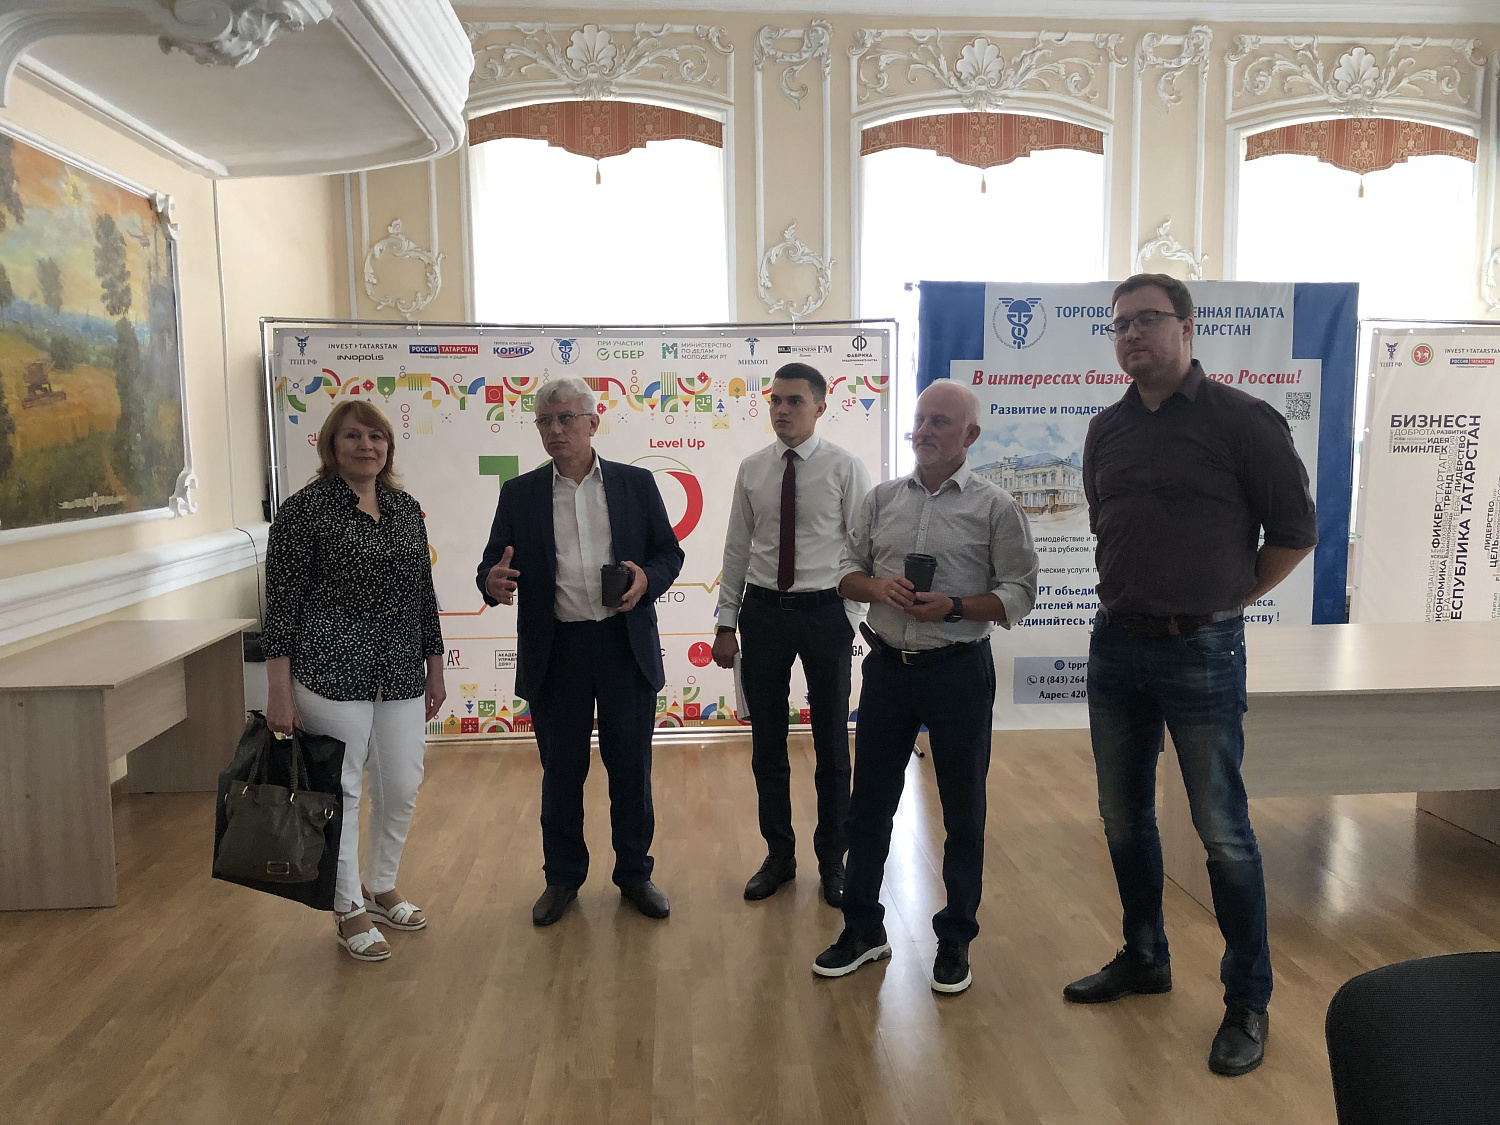 10 августа делегация ТПП Чувашской Республики посетила ТПП Республики Татарстан.